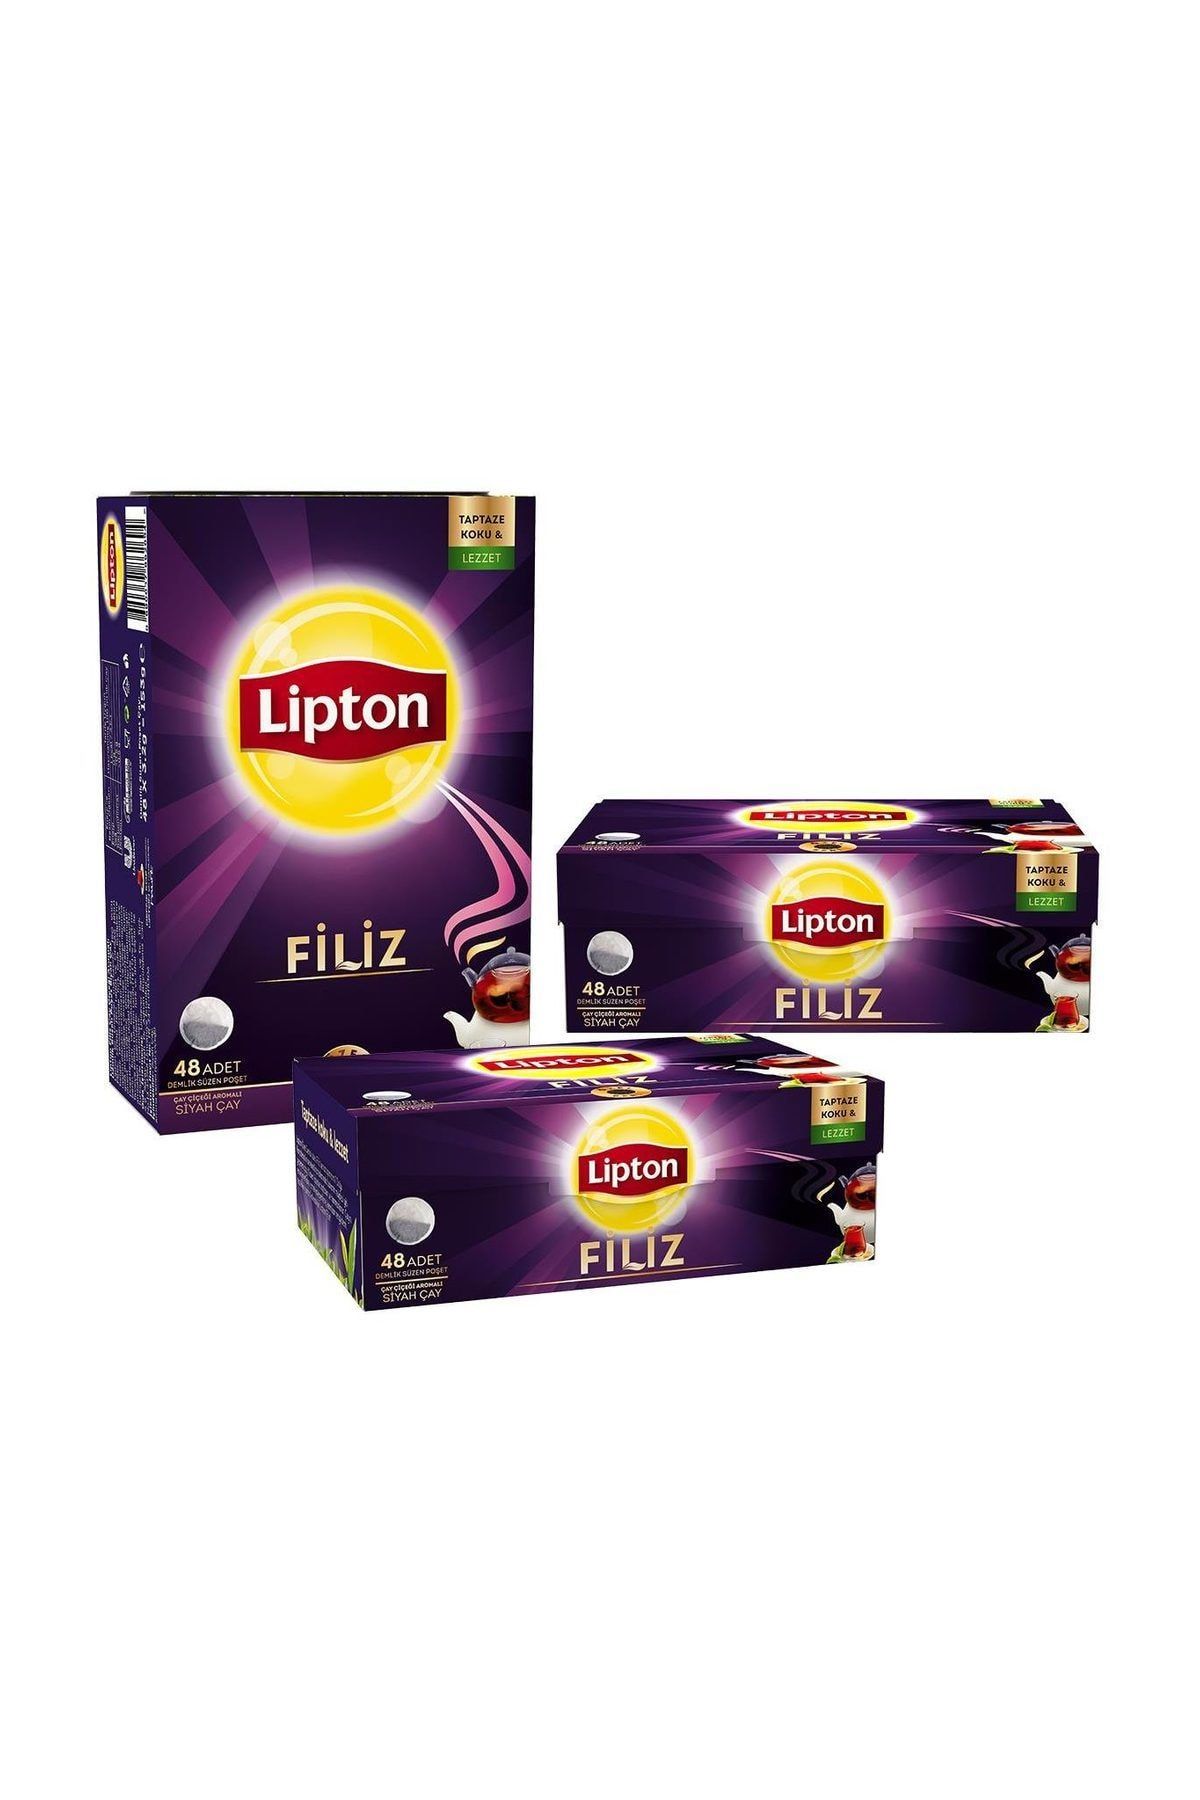 Lipton Filiz Demlik Poşet Çay 48'li x 3 Adet